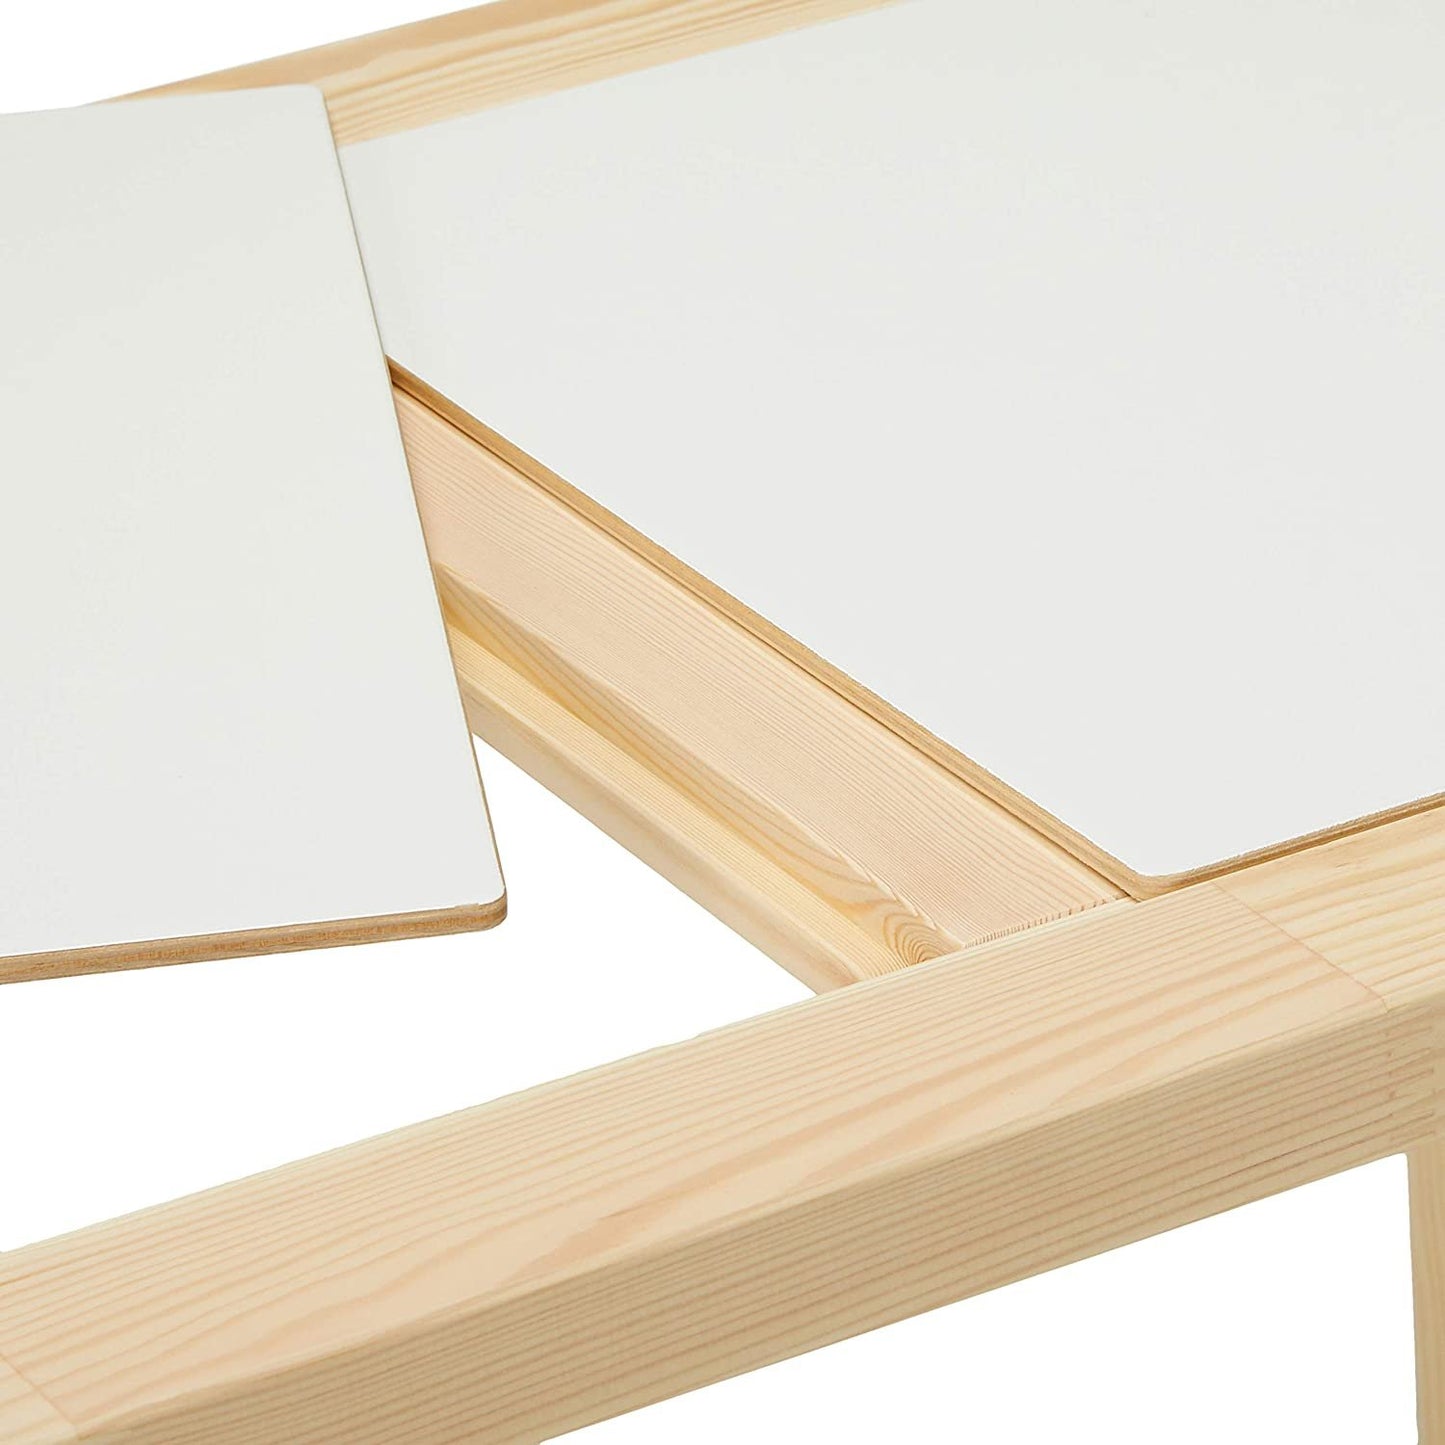 IKEA FLISAT Children's Table , 32 5/8x22 7/8&quot;&quot;, Wood